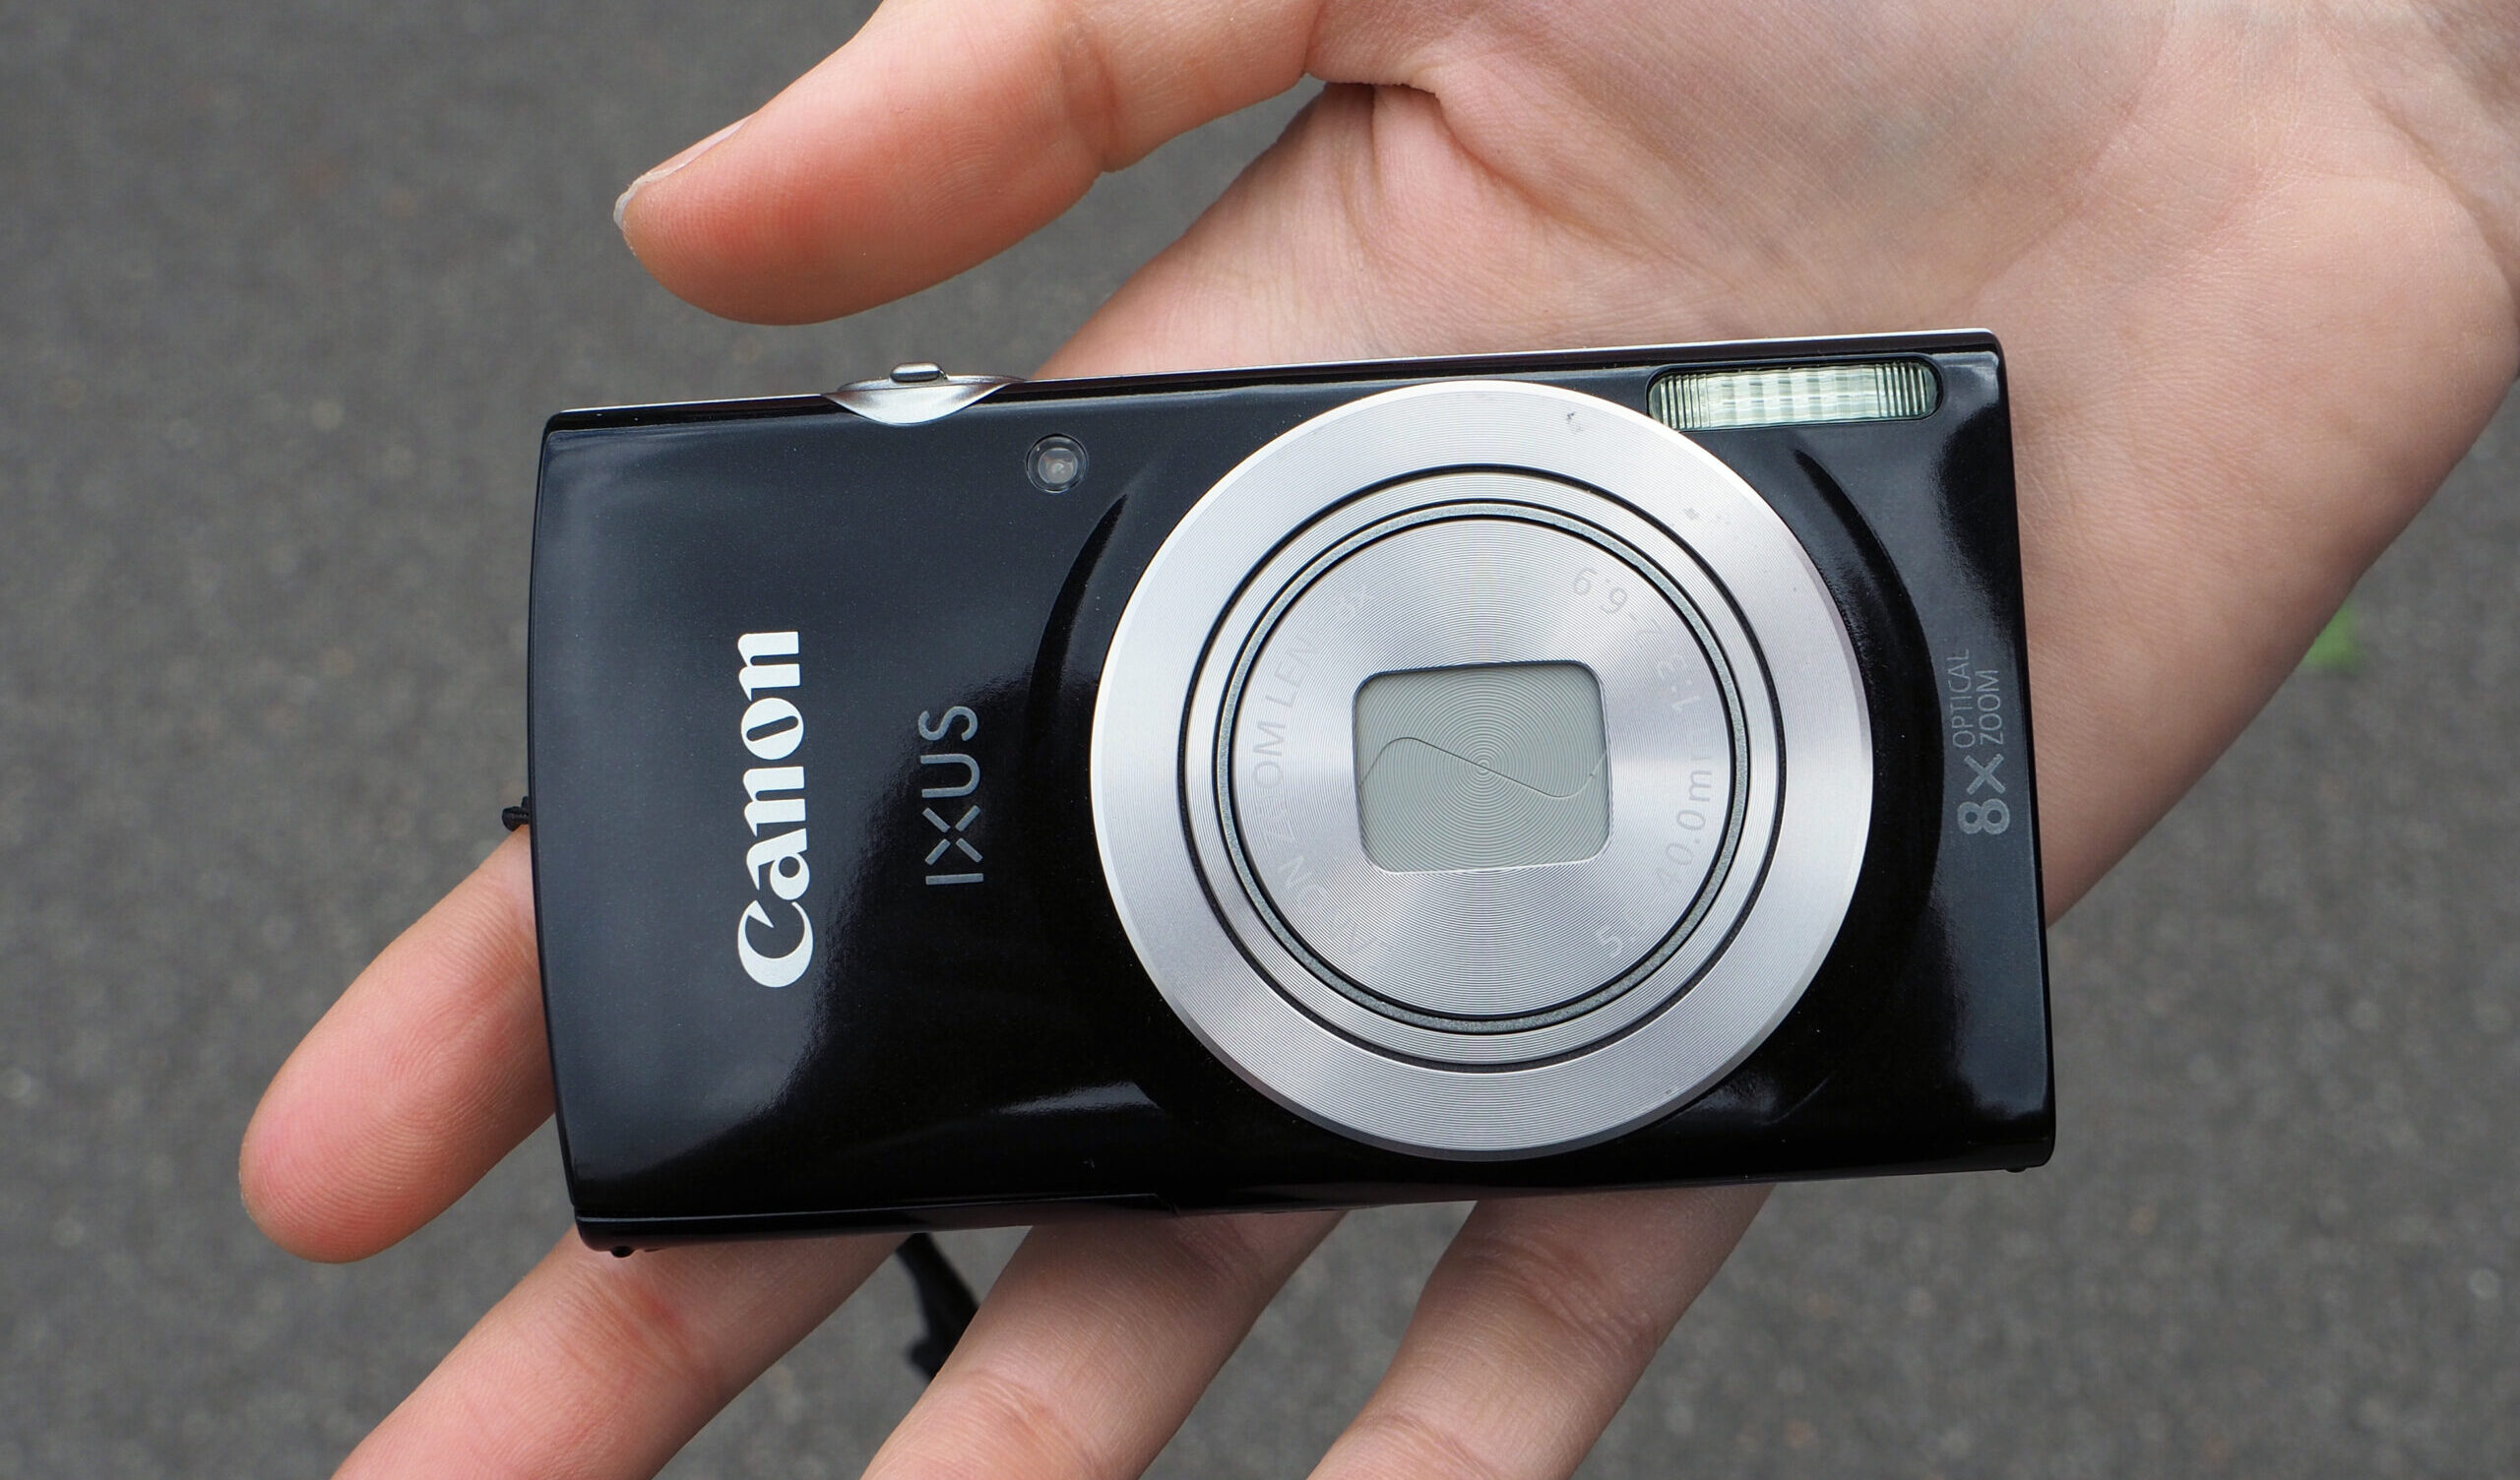 Le Canon IXUS 185 est un nouvel appareil photo compact économique. Le Canon 185 est doté d'un capteur CCD de 20 mégapixels 1/2,3 pouces et d'un zoom optique 10x.